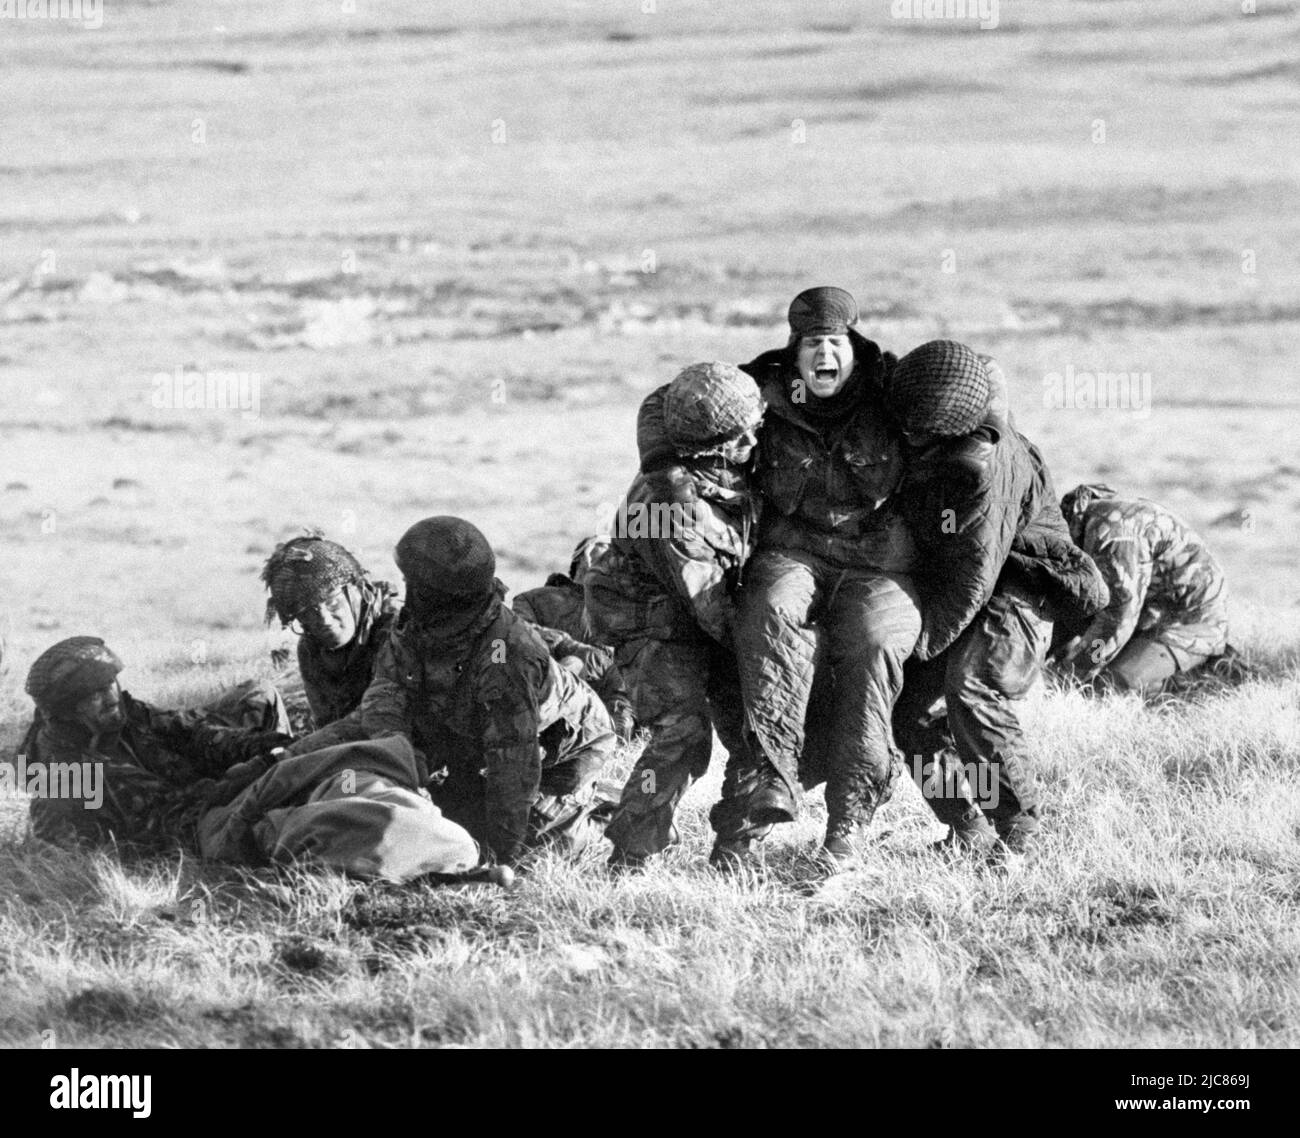 Photo du dossier datée du 04/06/82, des parachutistes britanniques qui effectuent des soins médicaux d'urgence sur des camarades blessés alors qu'ils sont en feu sur le mont Longdon pendant la campagne des Malouines. Banque D'Images